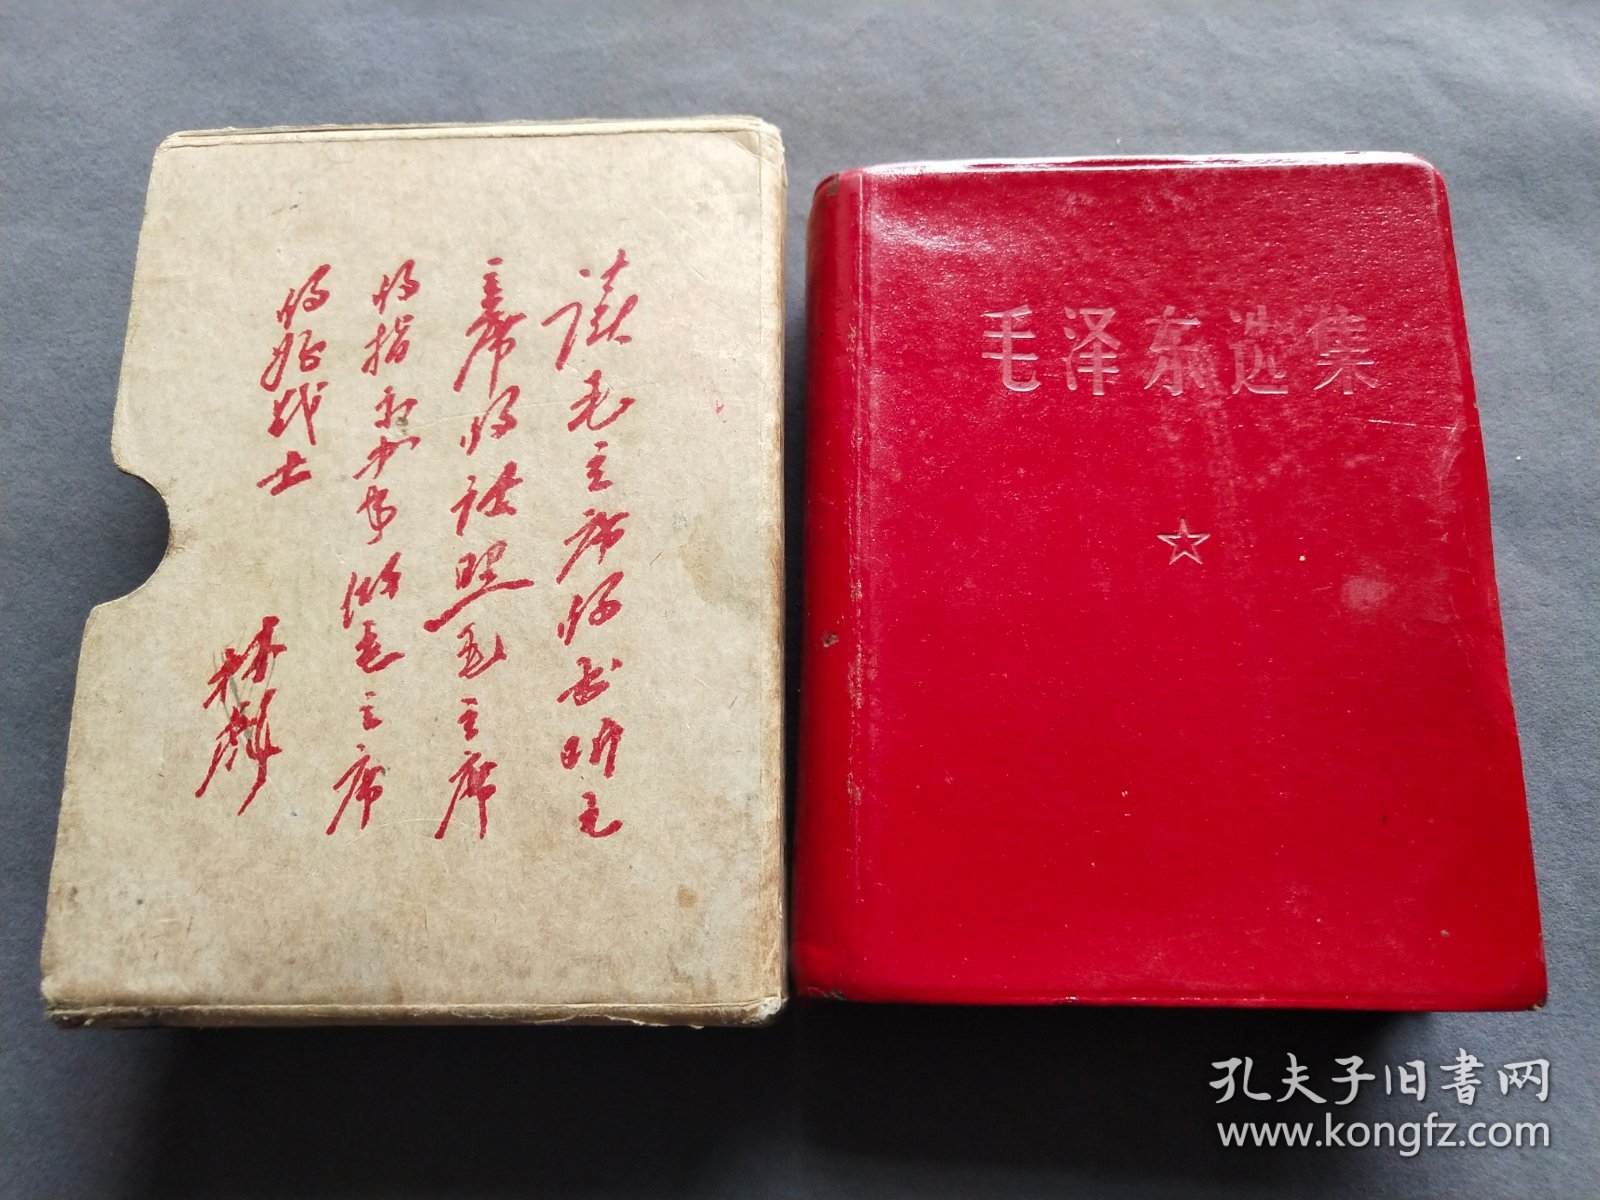 带题词的盒装毛泽东选集，济南版，皮面，1968年一版1印，一册完整不缺——MX019